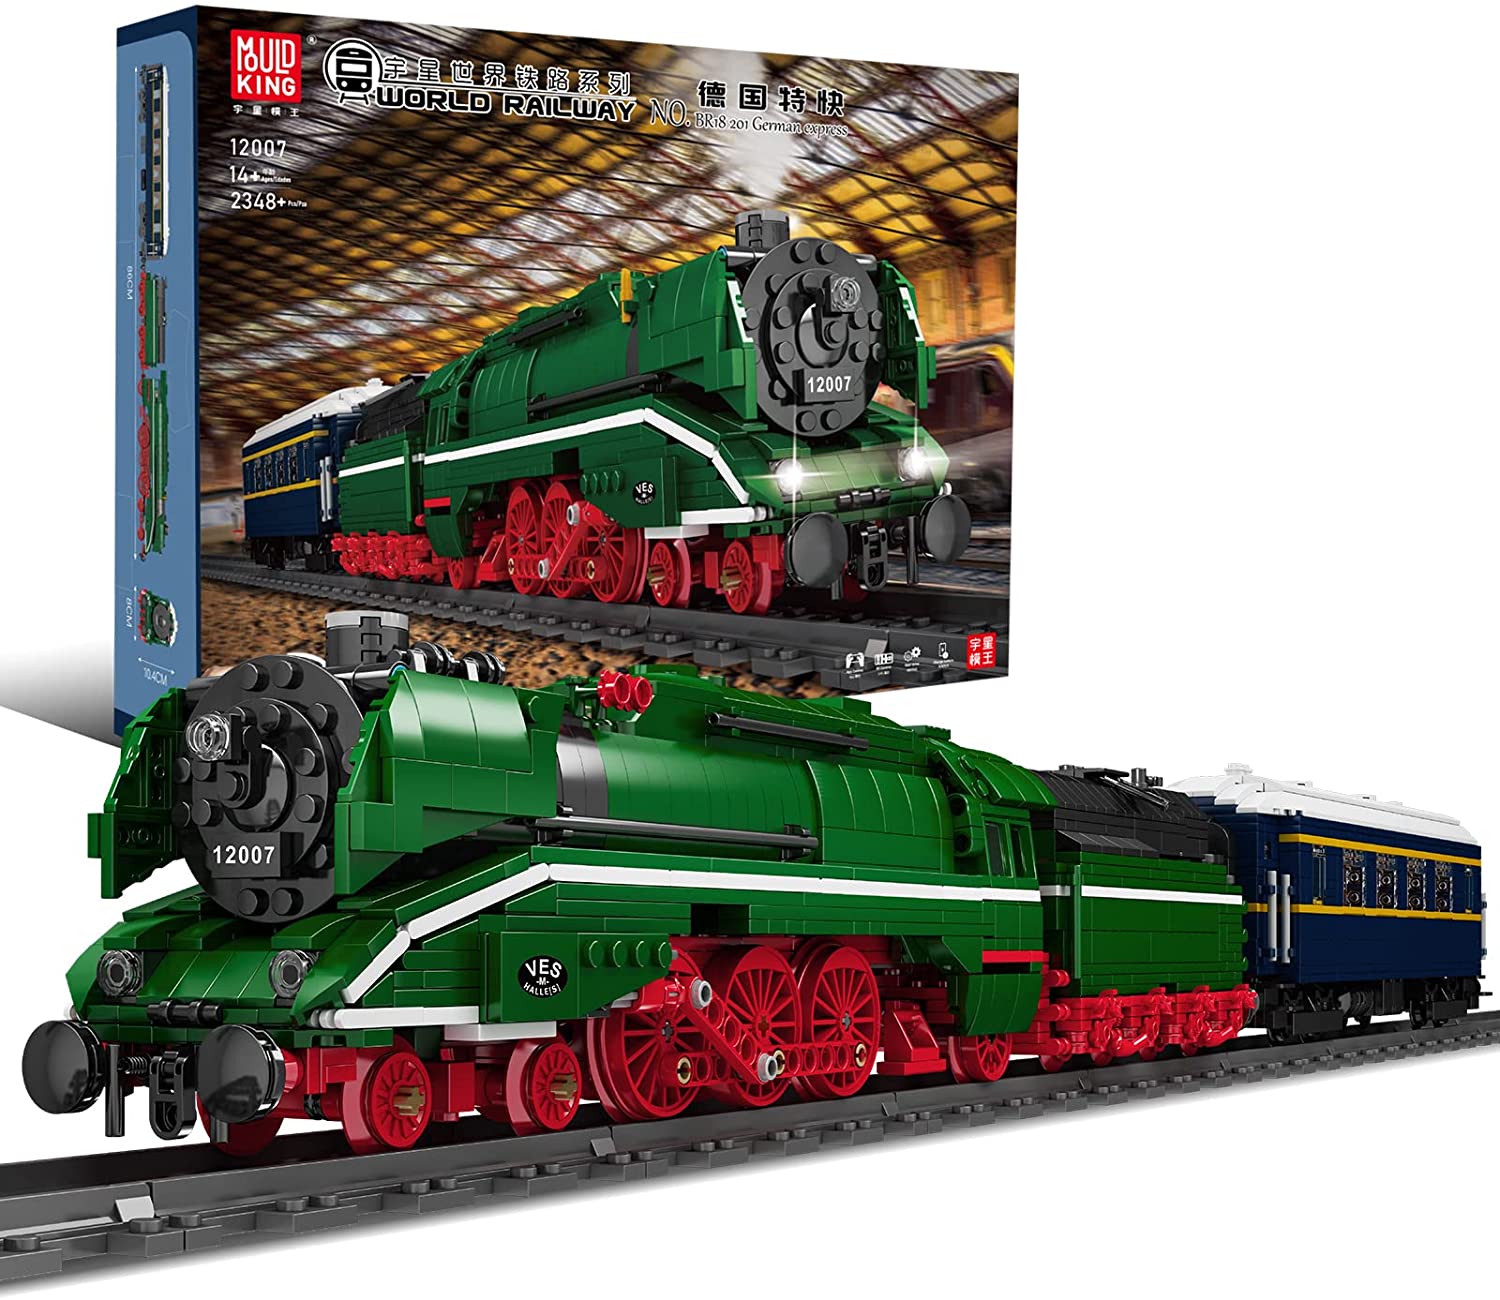 BR18 201 Express Dampflokomotive